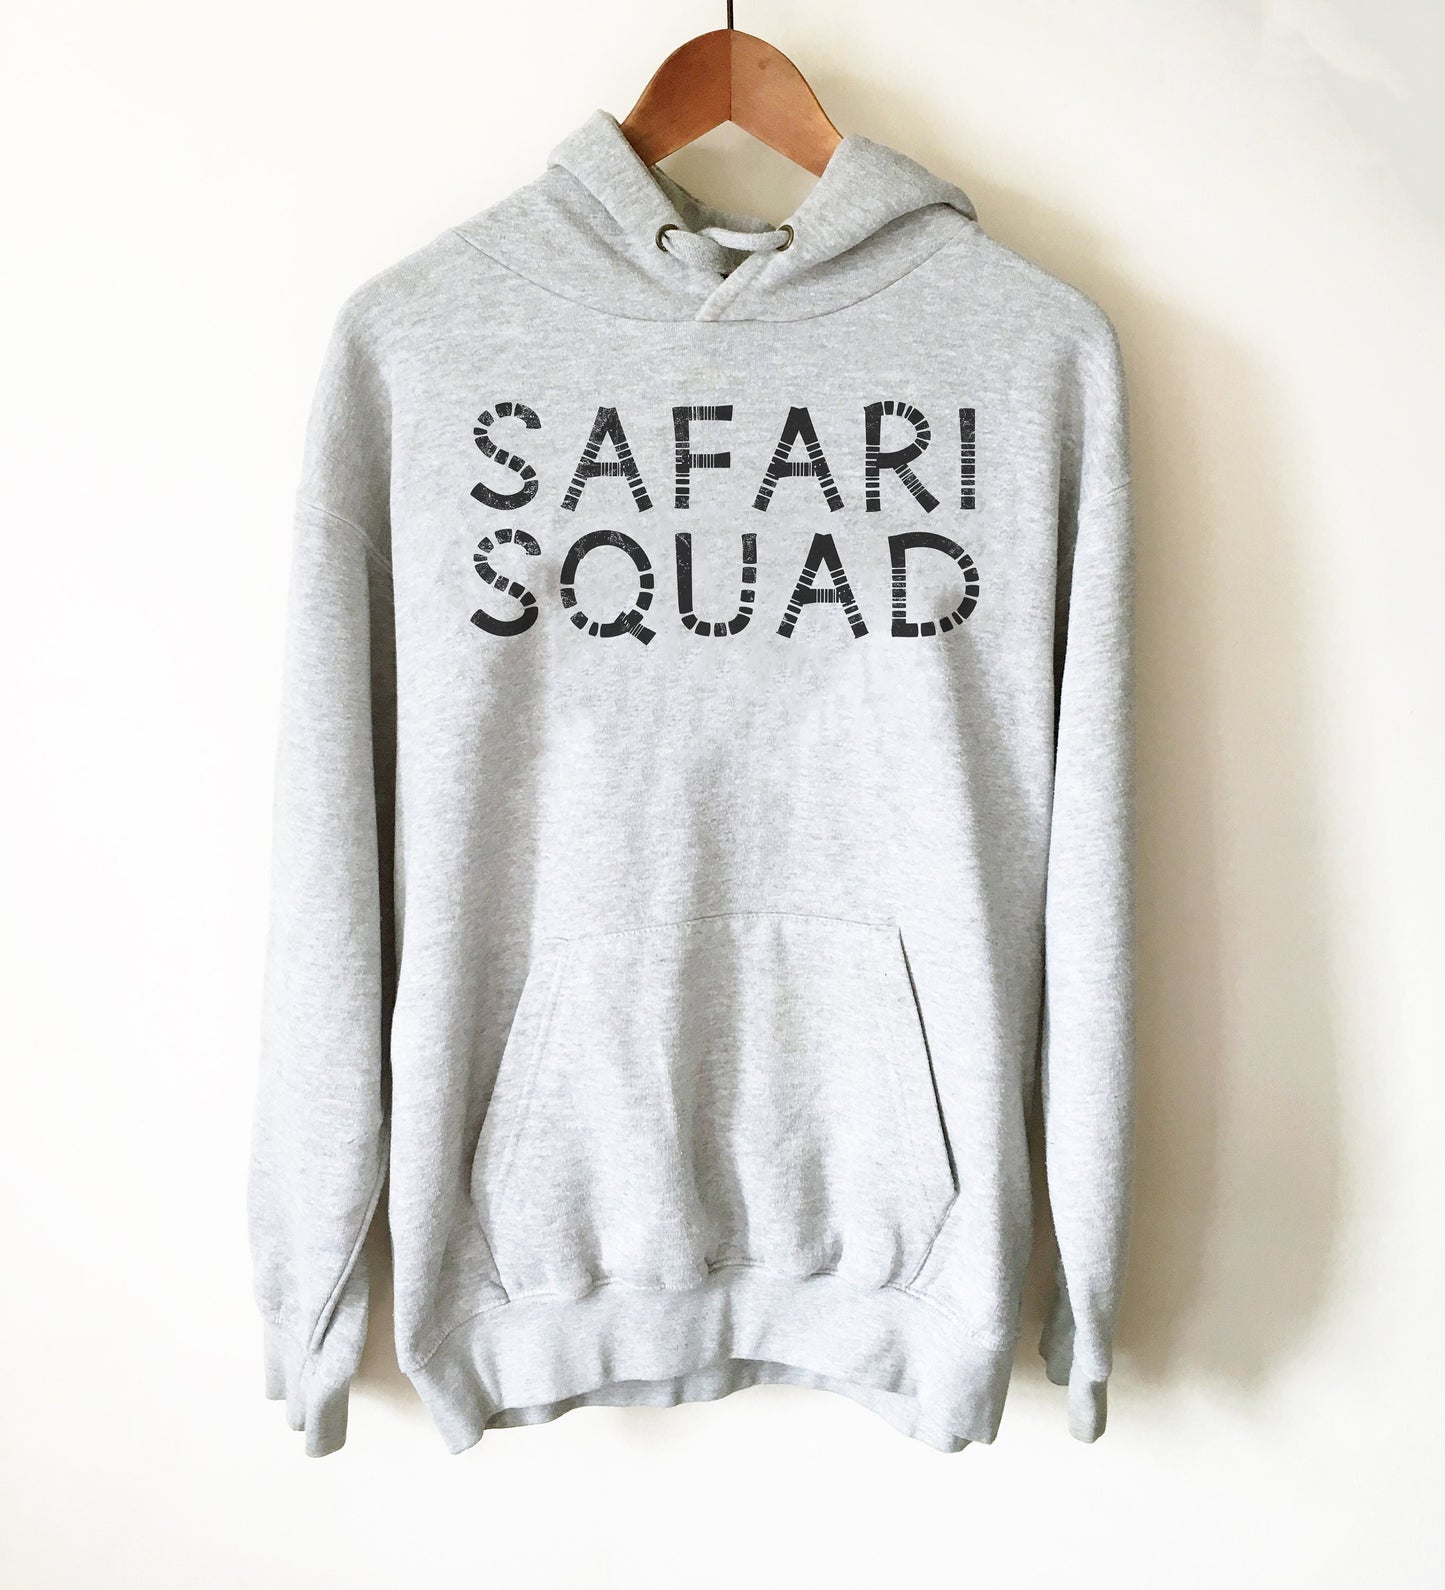 Safari Squad Hoodie - Safari Shirt,